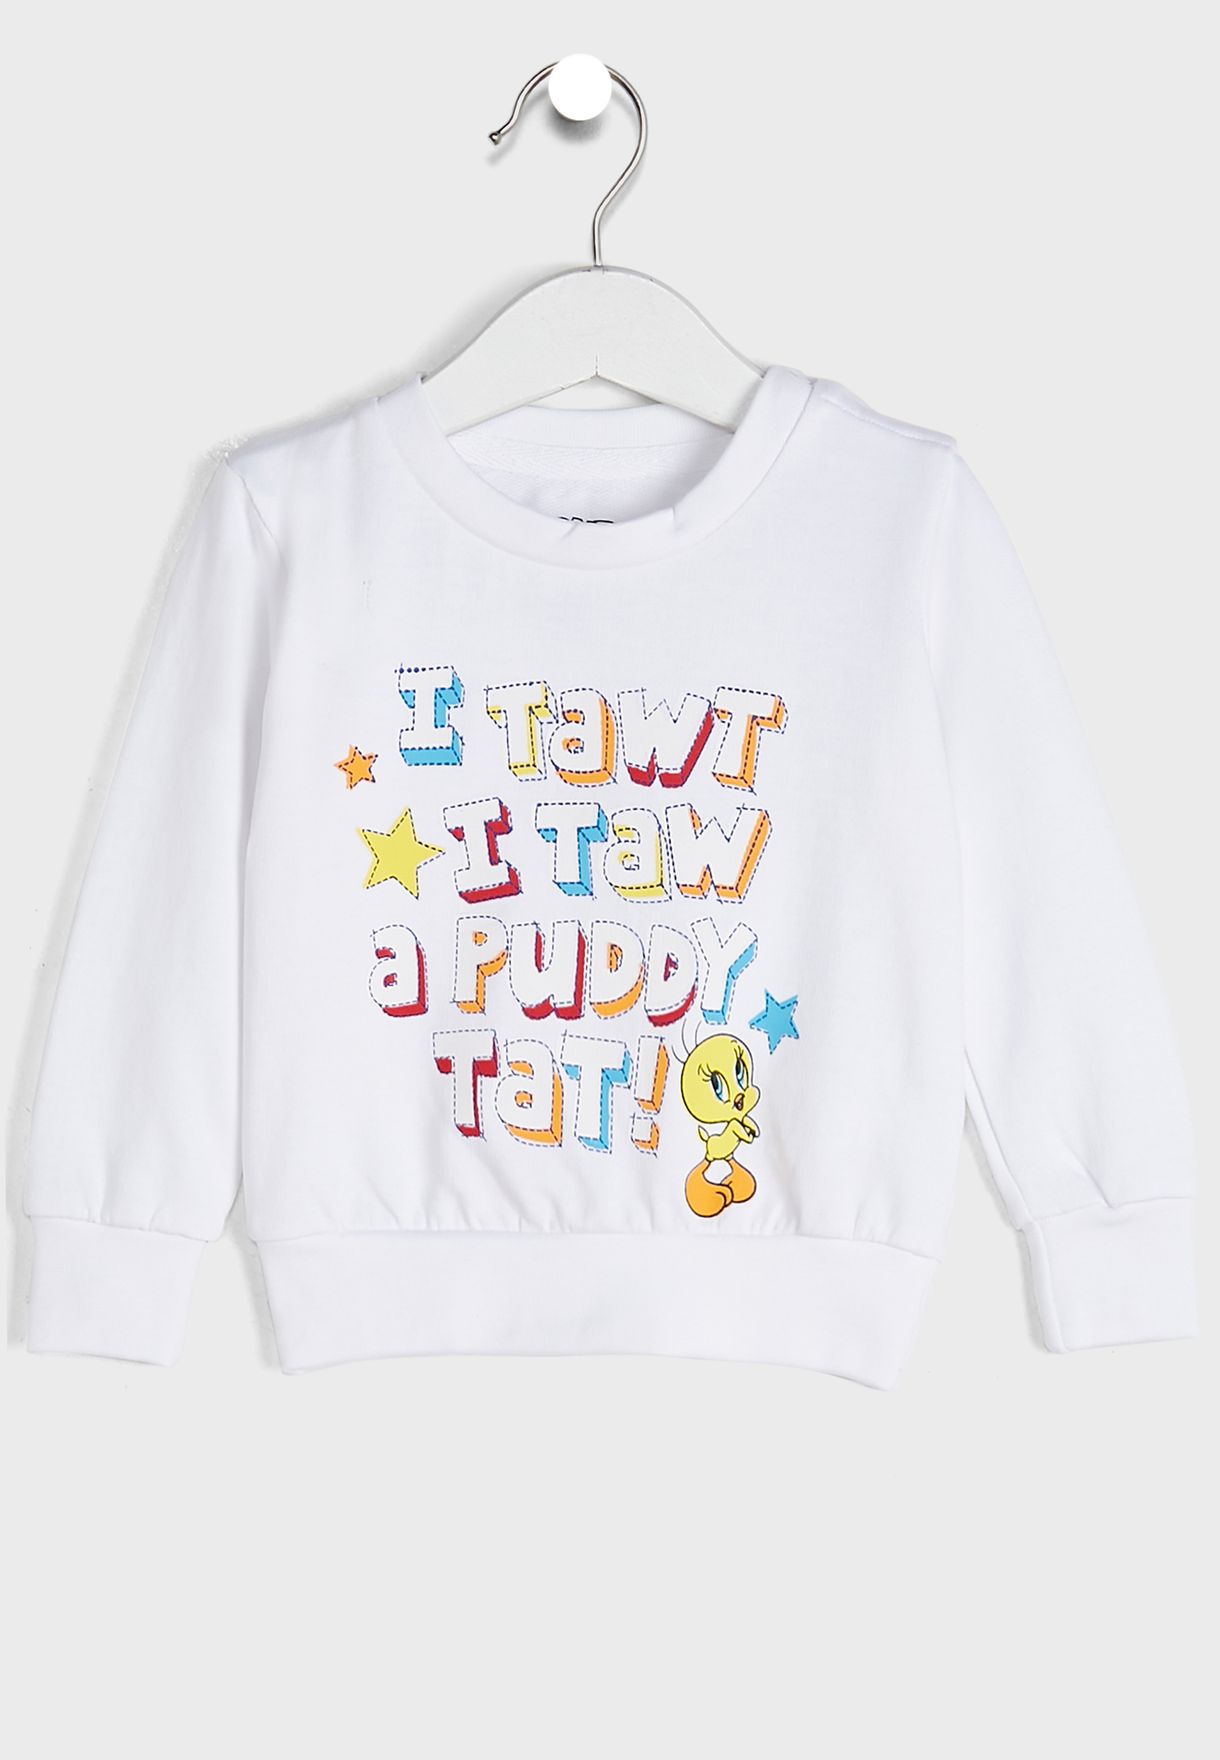 Infant Tweety Sweatshirt